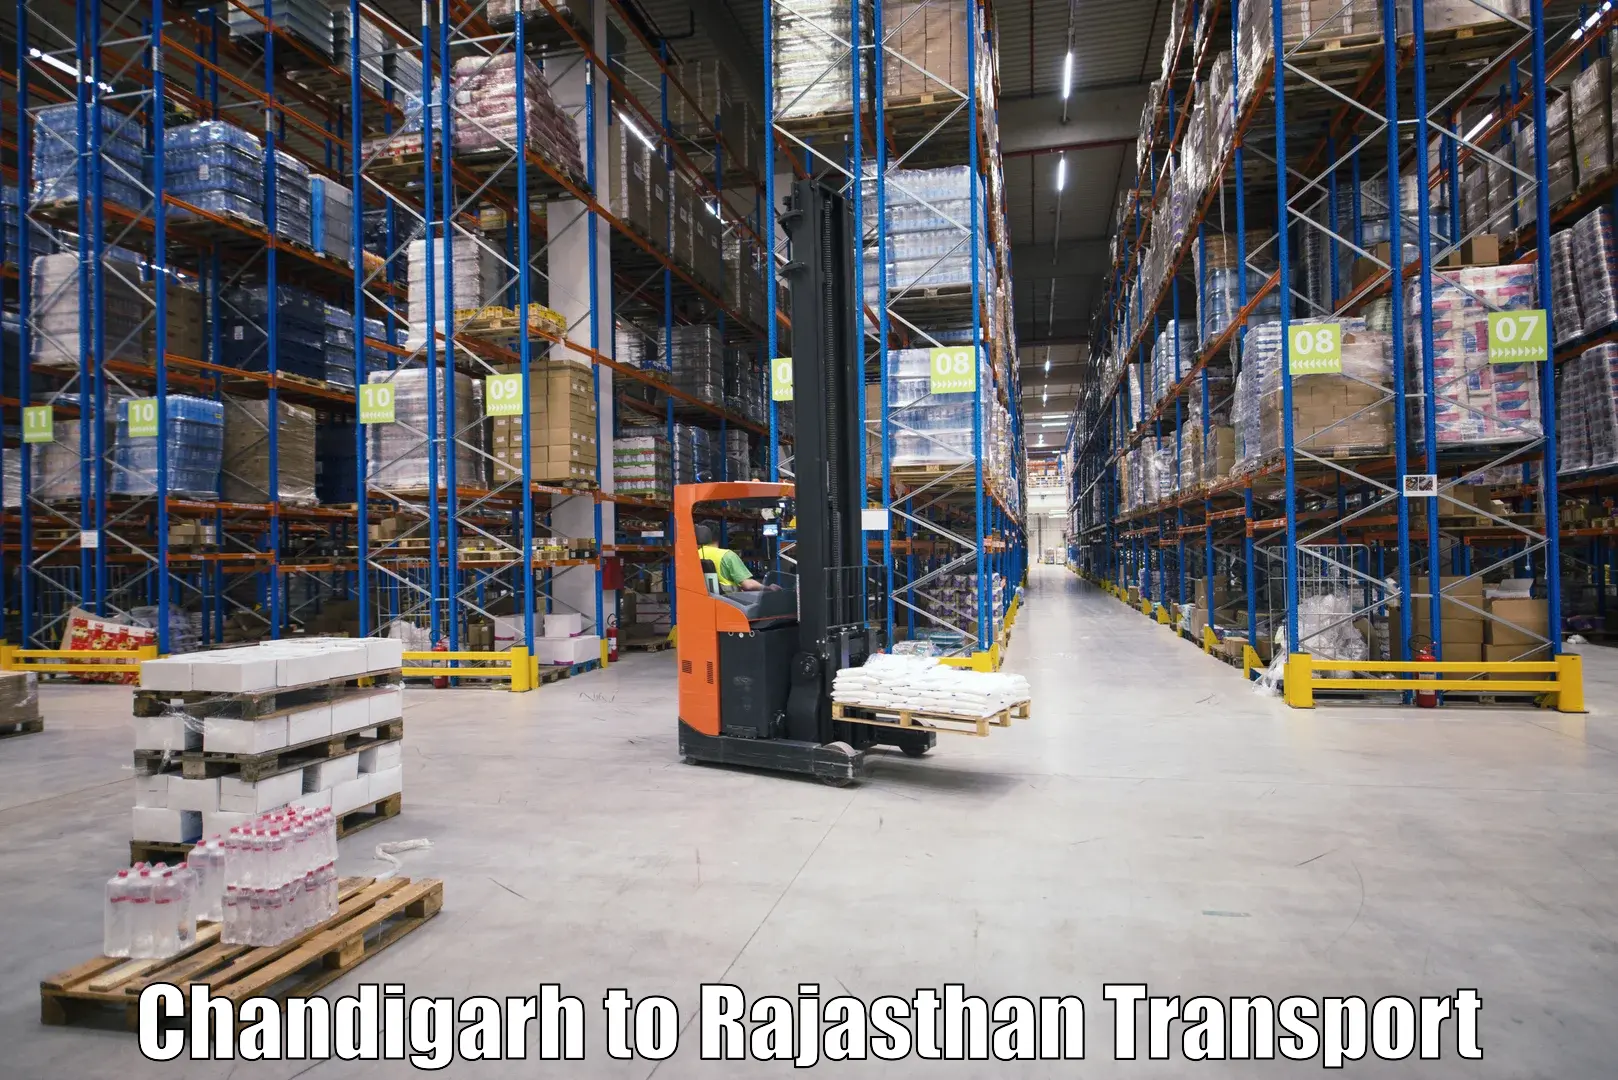 Road transport online services Chandigarh to Banswara